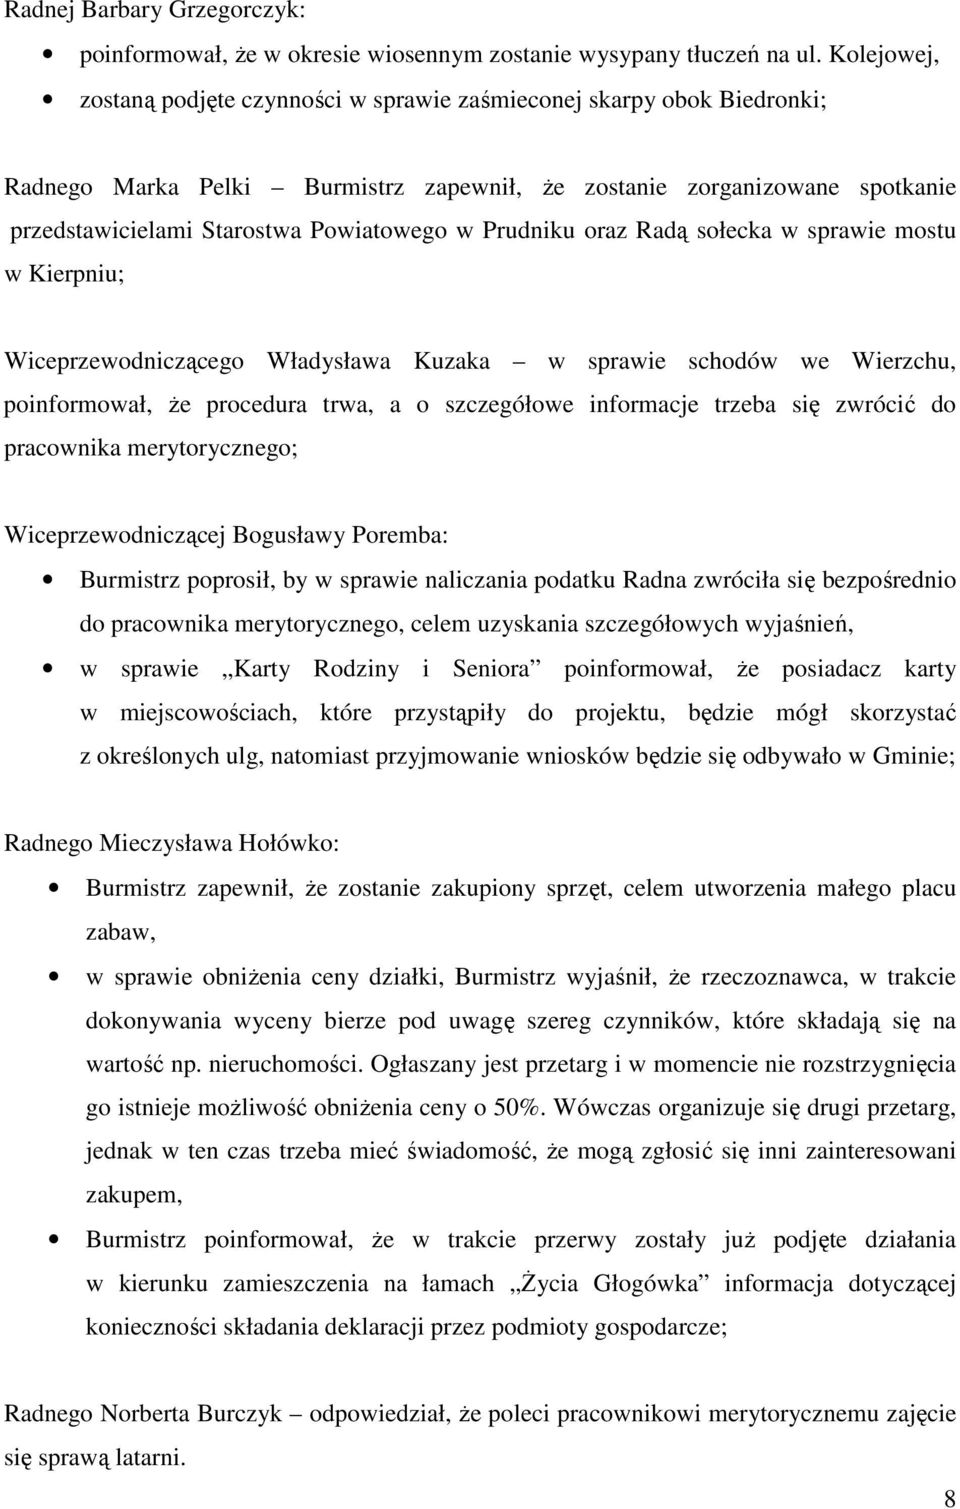 Prudniku oraz Radą sołecka w sprawie mostu w Kierpniu; Wiceprzewodniczącego Władysława Kuzaka w sprawie schodów we Wierzchu, poinformował, że procedura trwa, a o szczegółowe informacje trzeba się